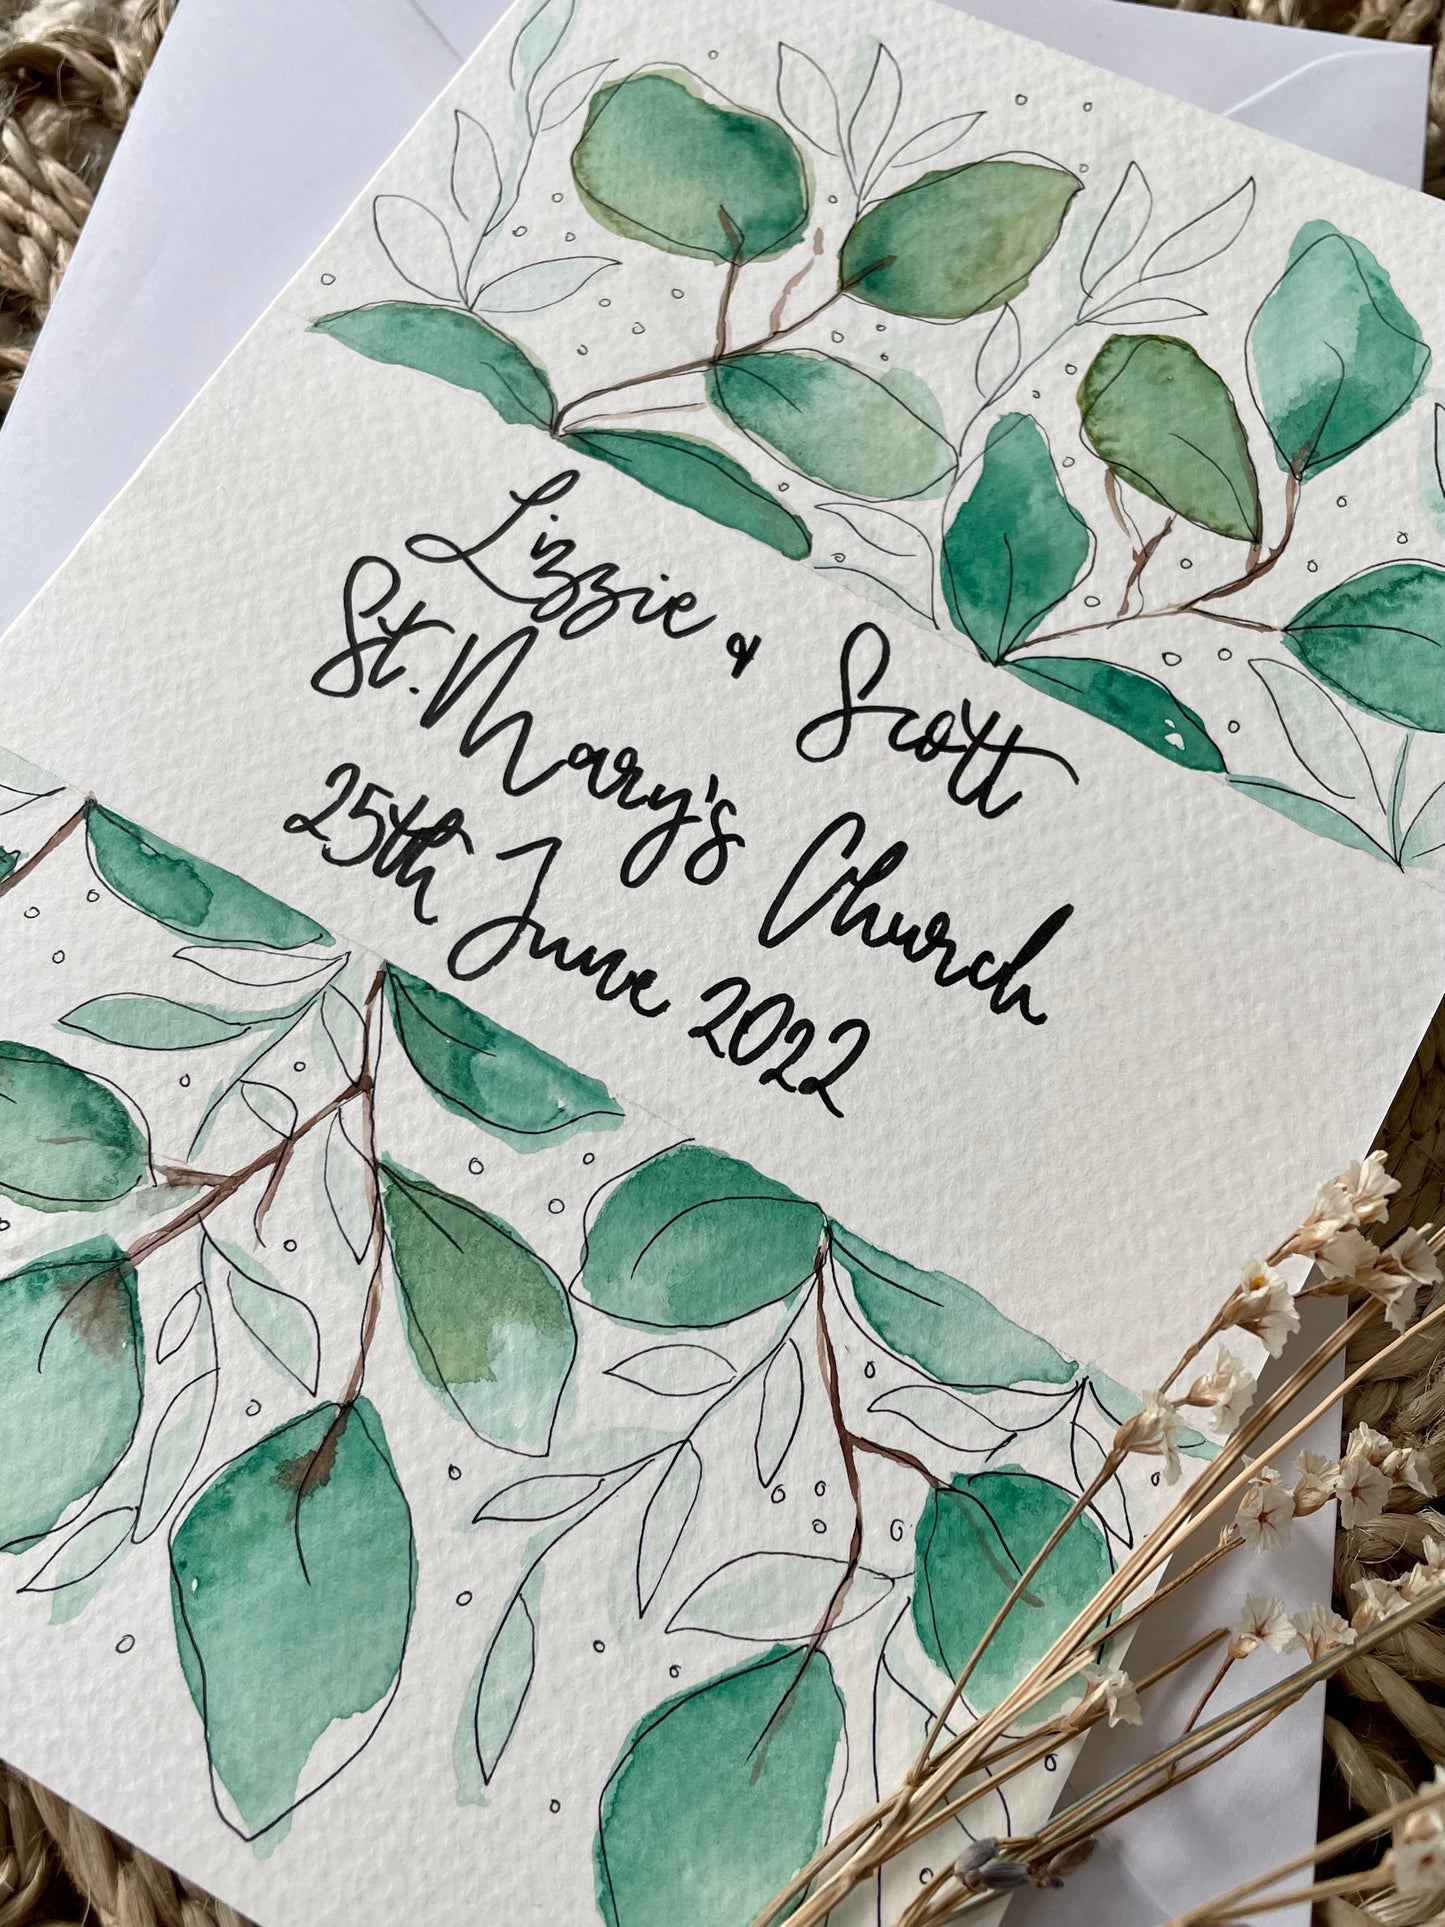 Personalised Large Leaf Botanical Wedding Card